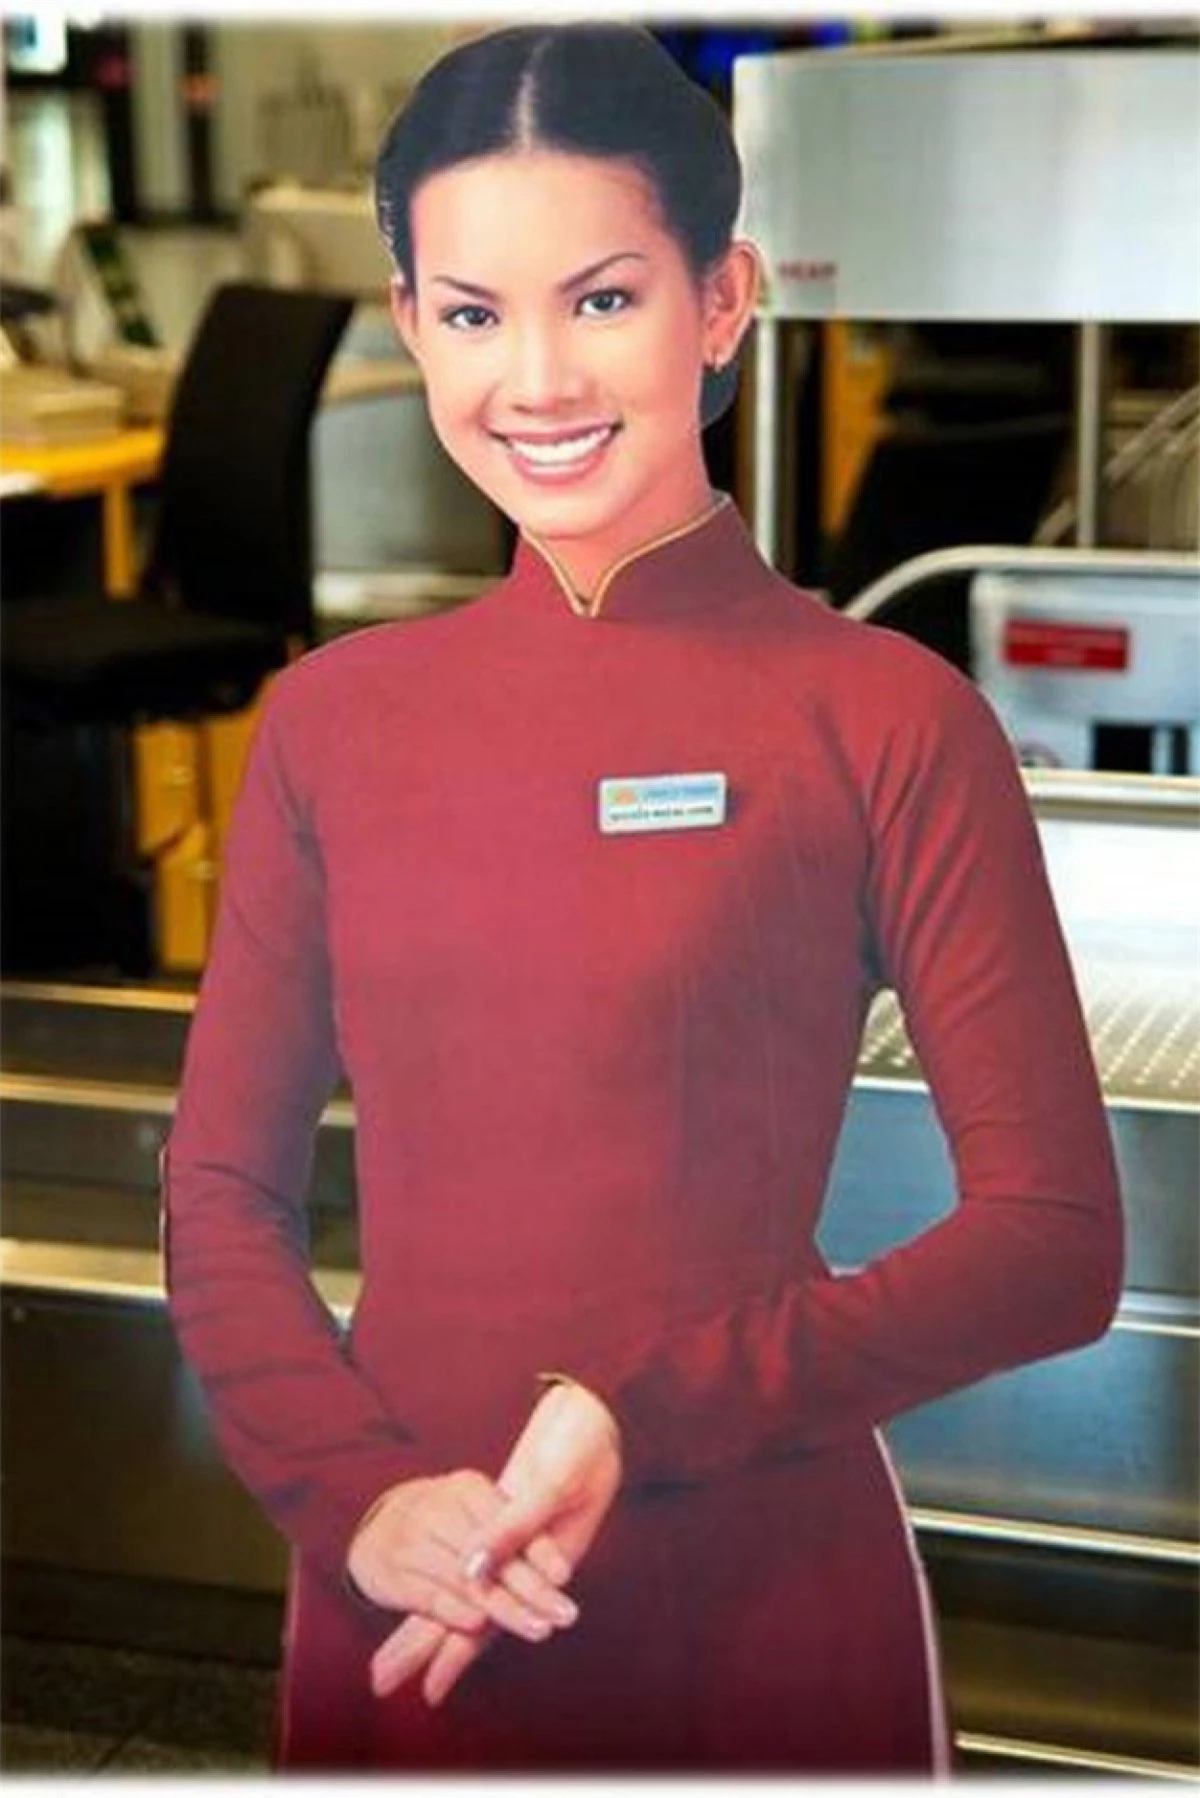 Trở về sau cuộc thi, nhờ danh tiếng và sắc đẹp của mình, Hoàng Oanh đã được hãng hàng không quốc gia Việt Nam lựa chọn là gương mặt đại diện. Hình ảnh cô gái mặc tà áo dài đỏ duyên dáng xuất hiện khắp nơi tại các phòng vé máy bay vẫn khiến nhiều người nhớ mãi.